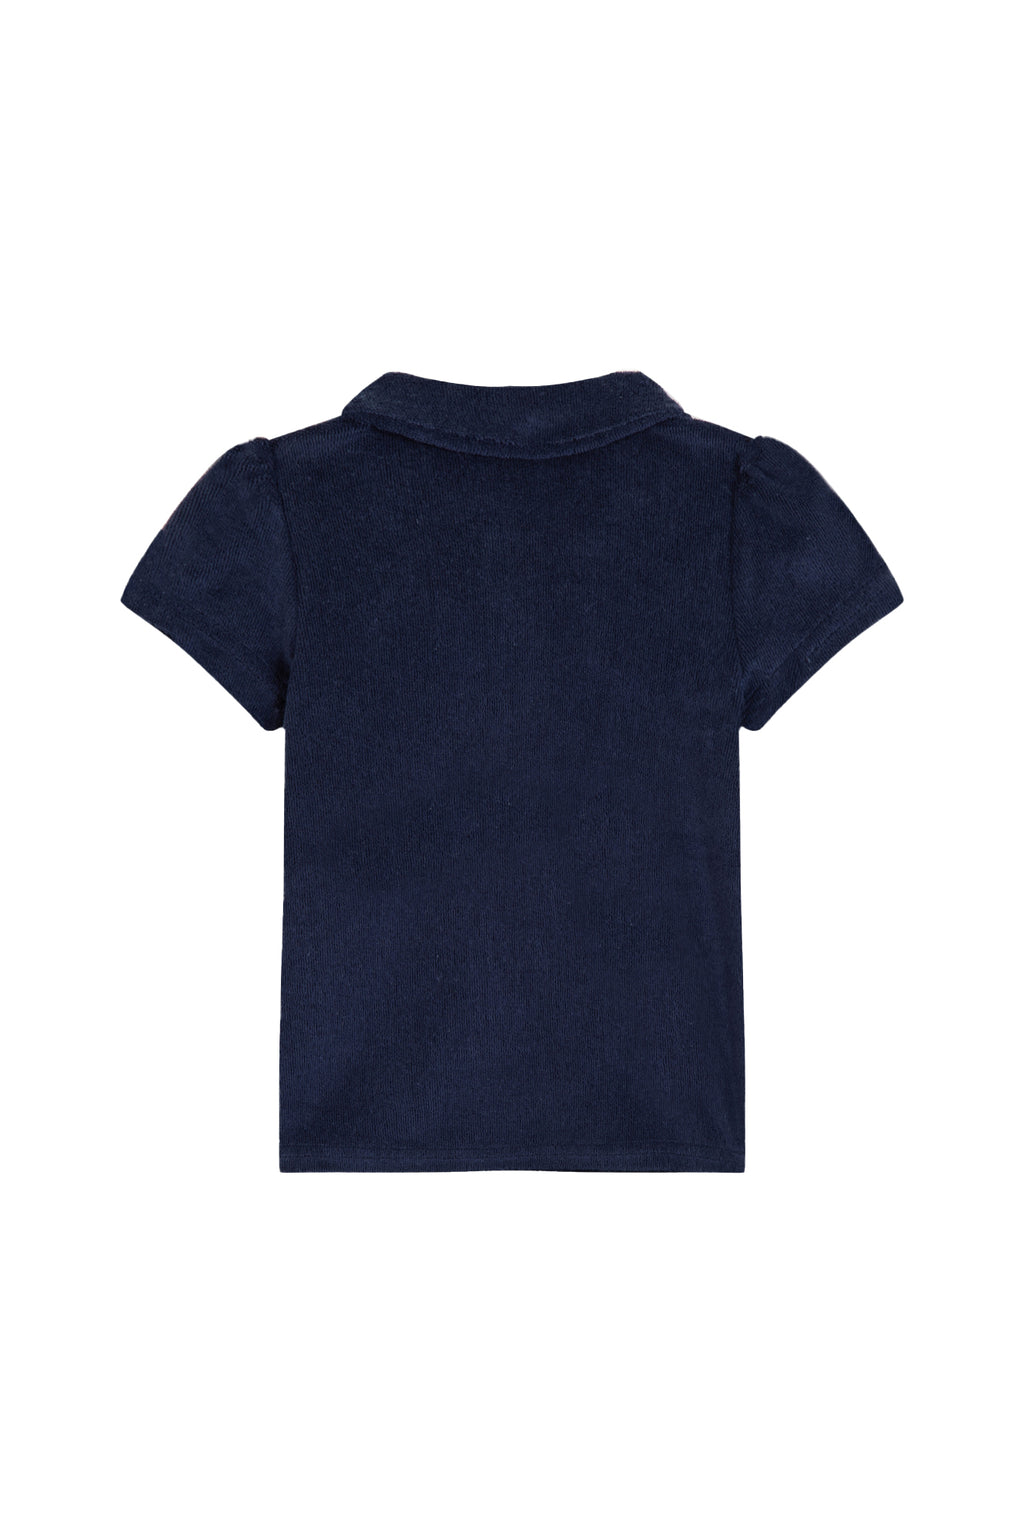 Kleid - Meeresschwamm Poloshirt